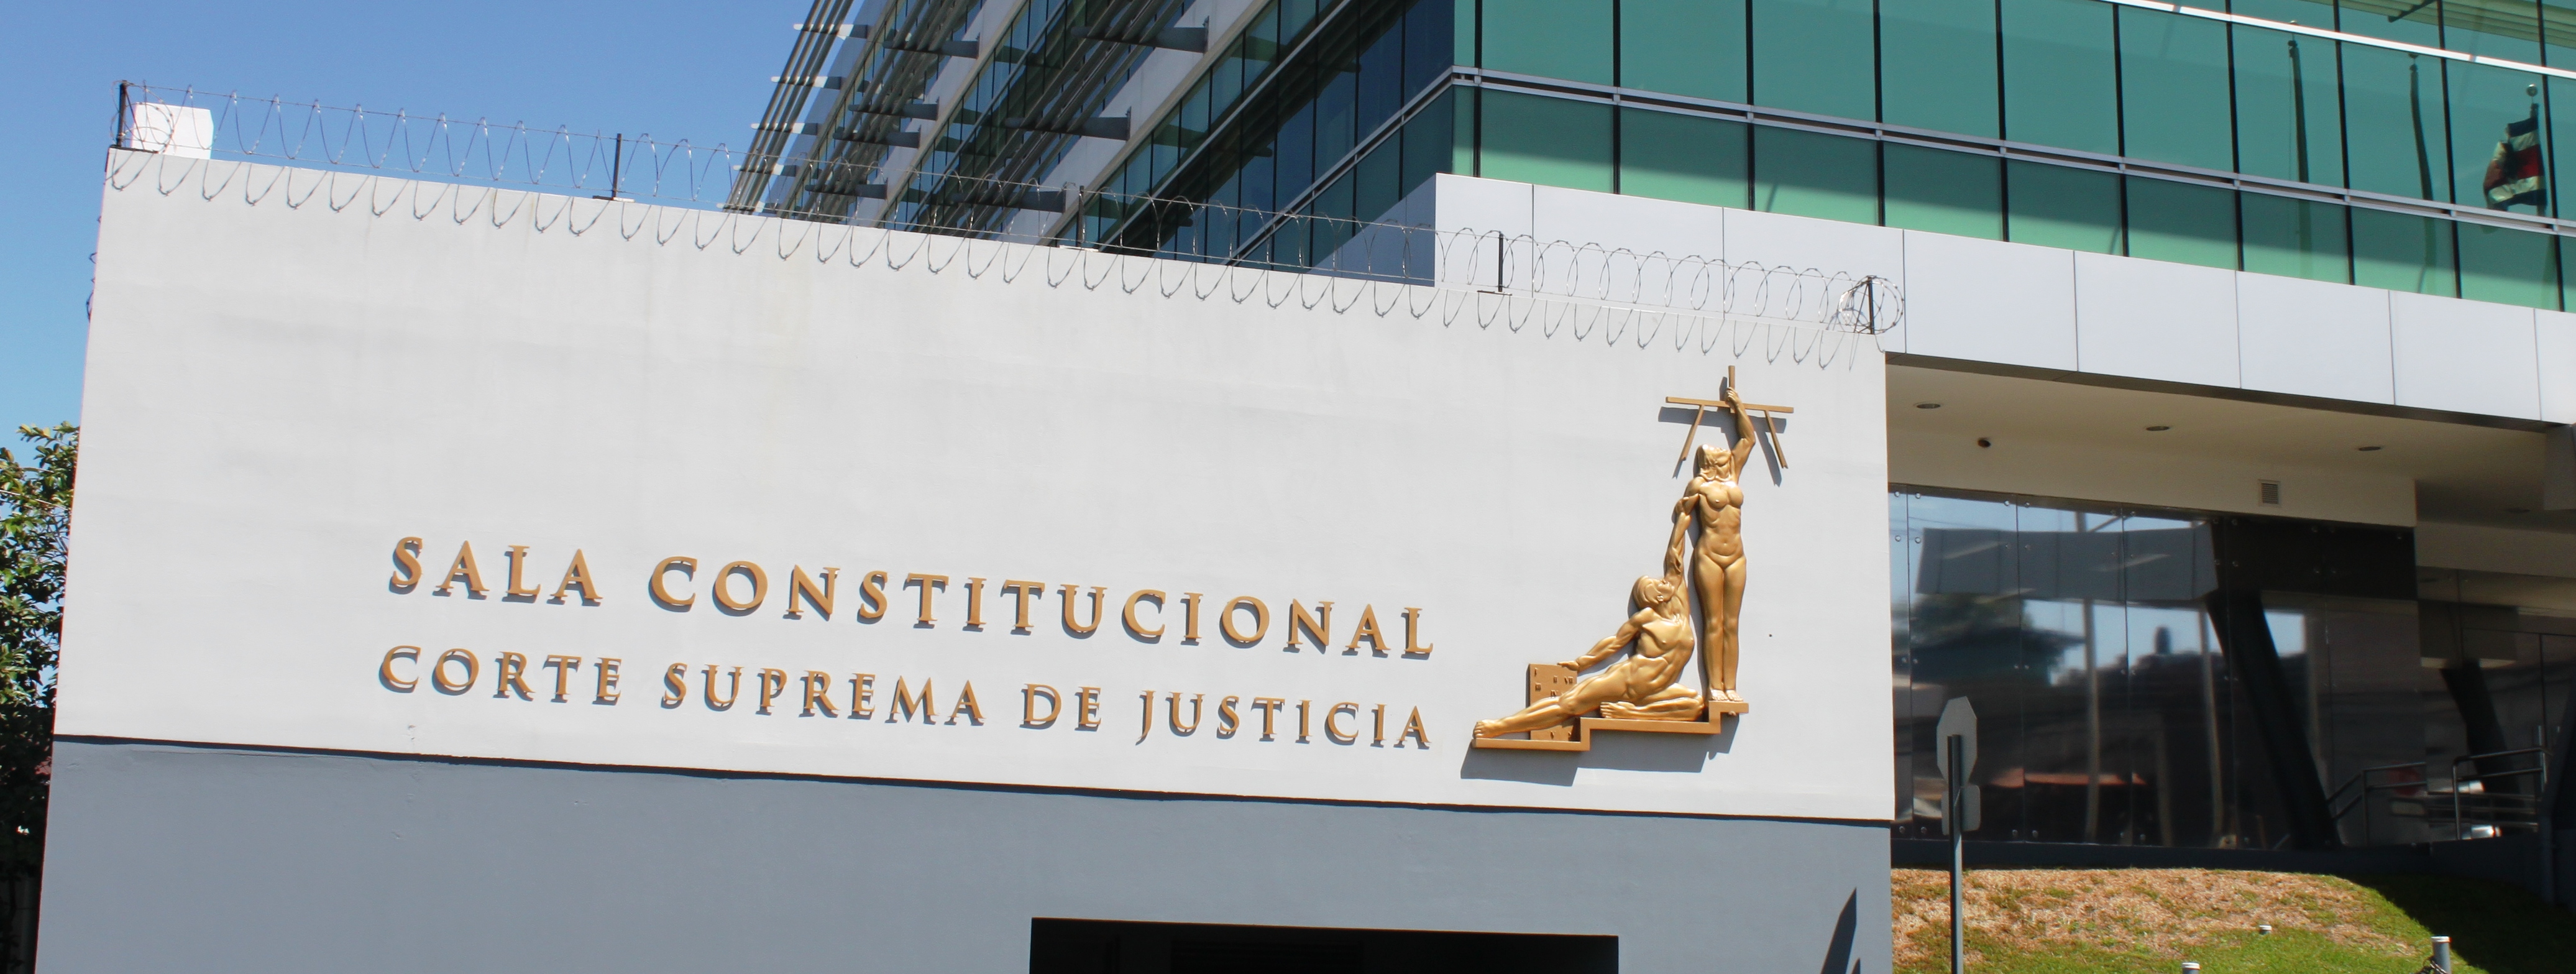 Se muestra la entrada del edificio de la Sala Constitucional, Corte Suprema de Justicia